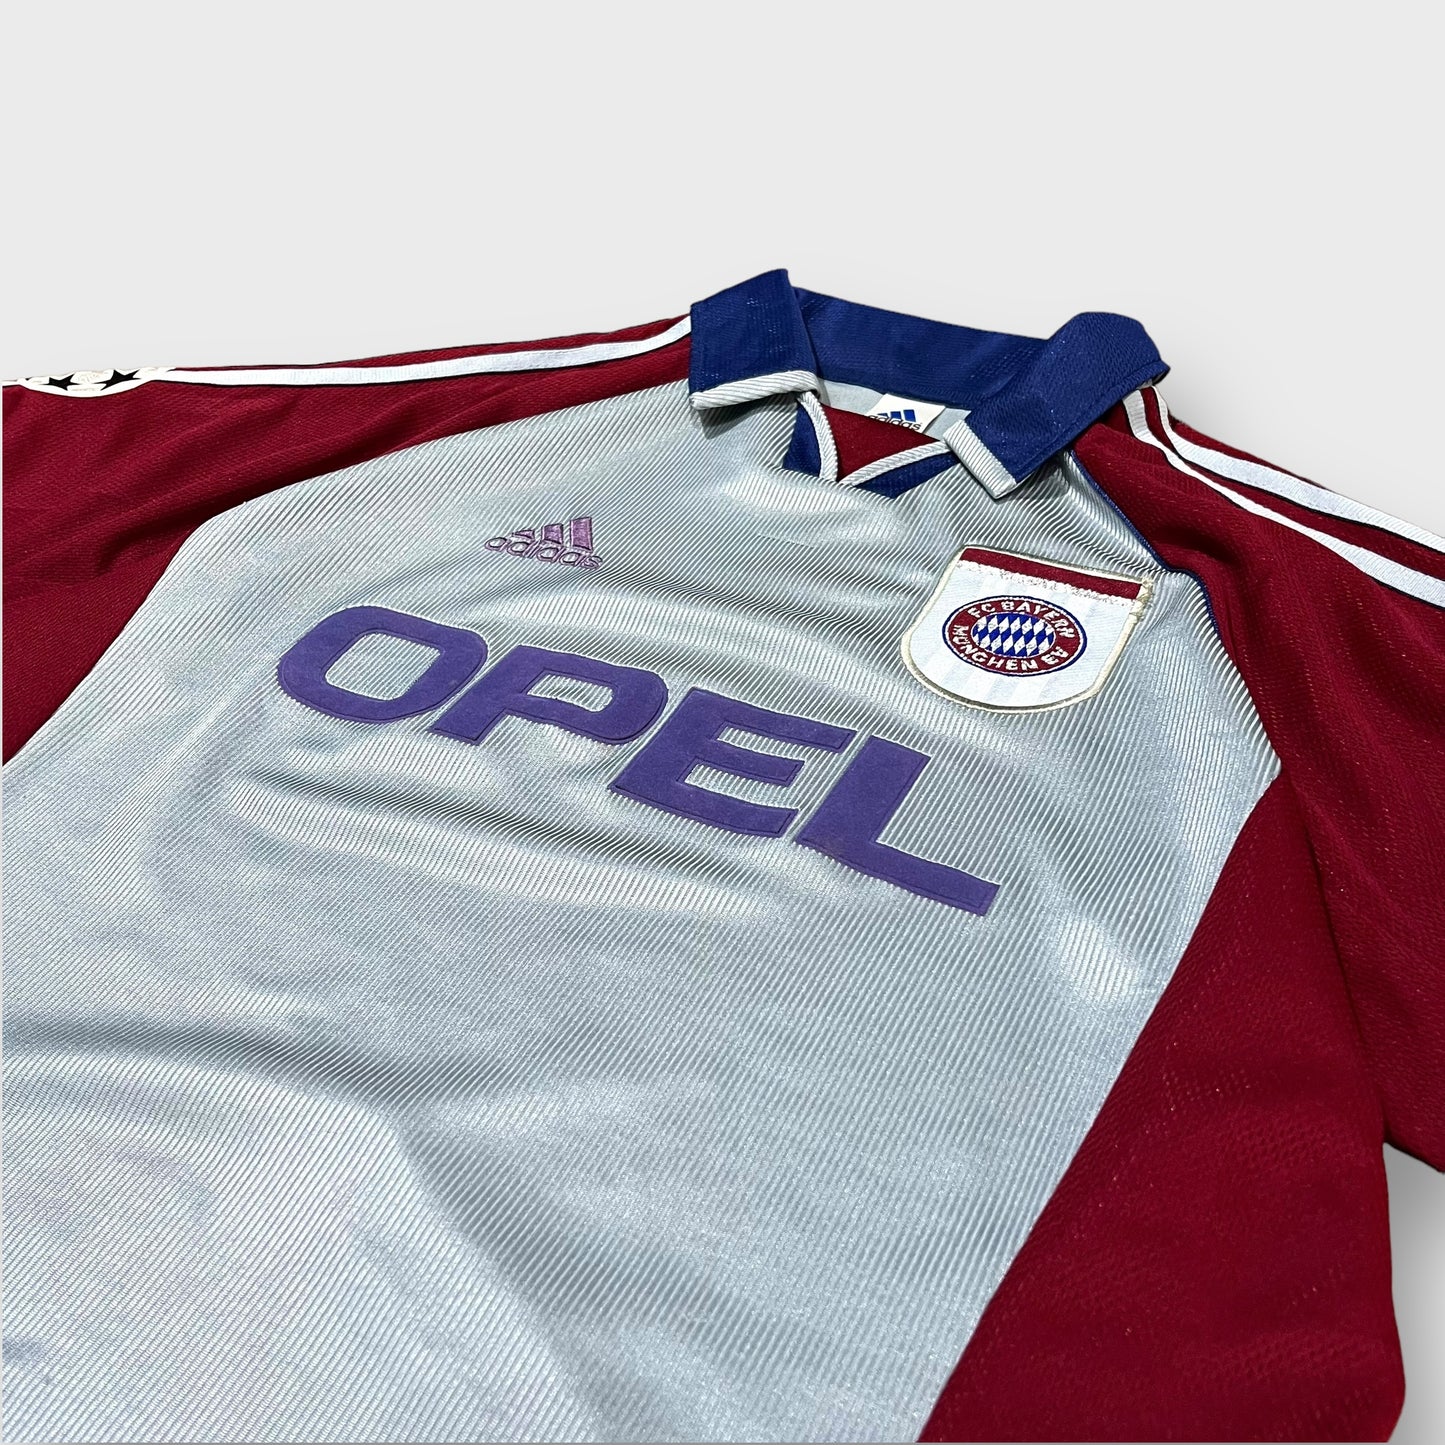 90’s “BAYERN MUNICH”soccer shirt